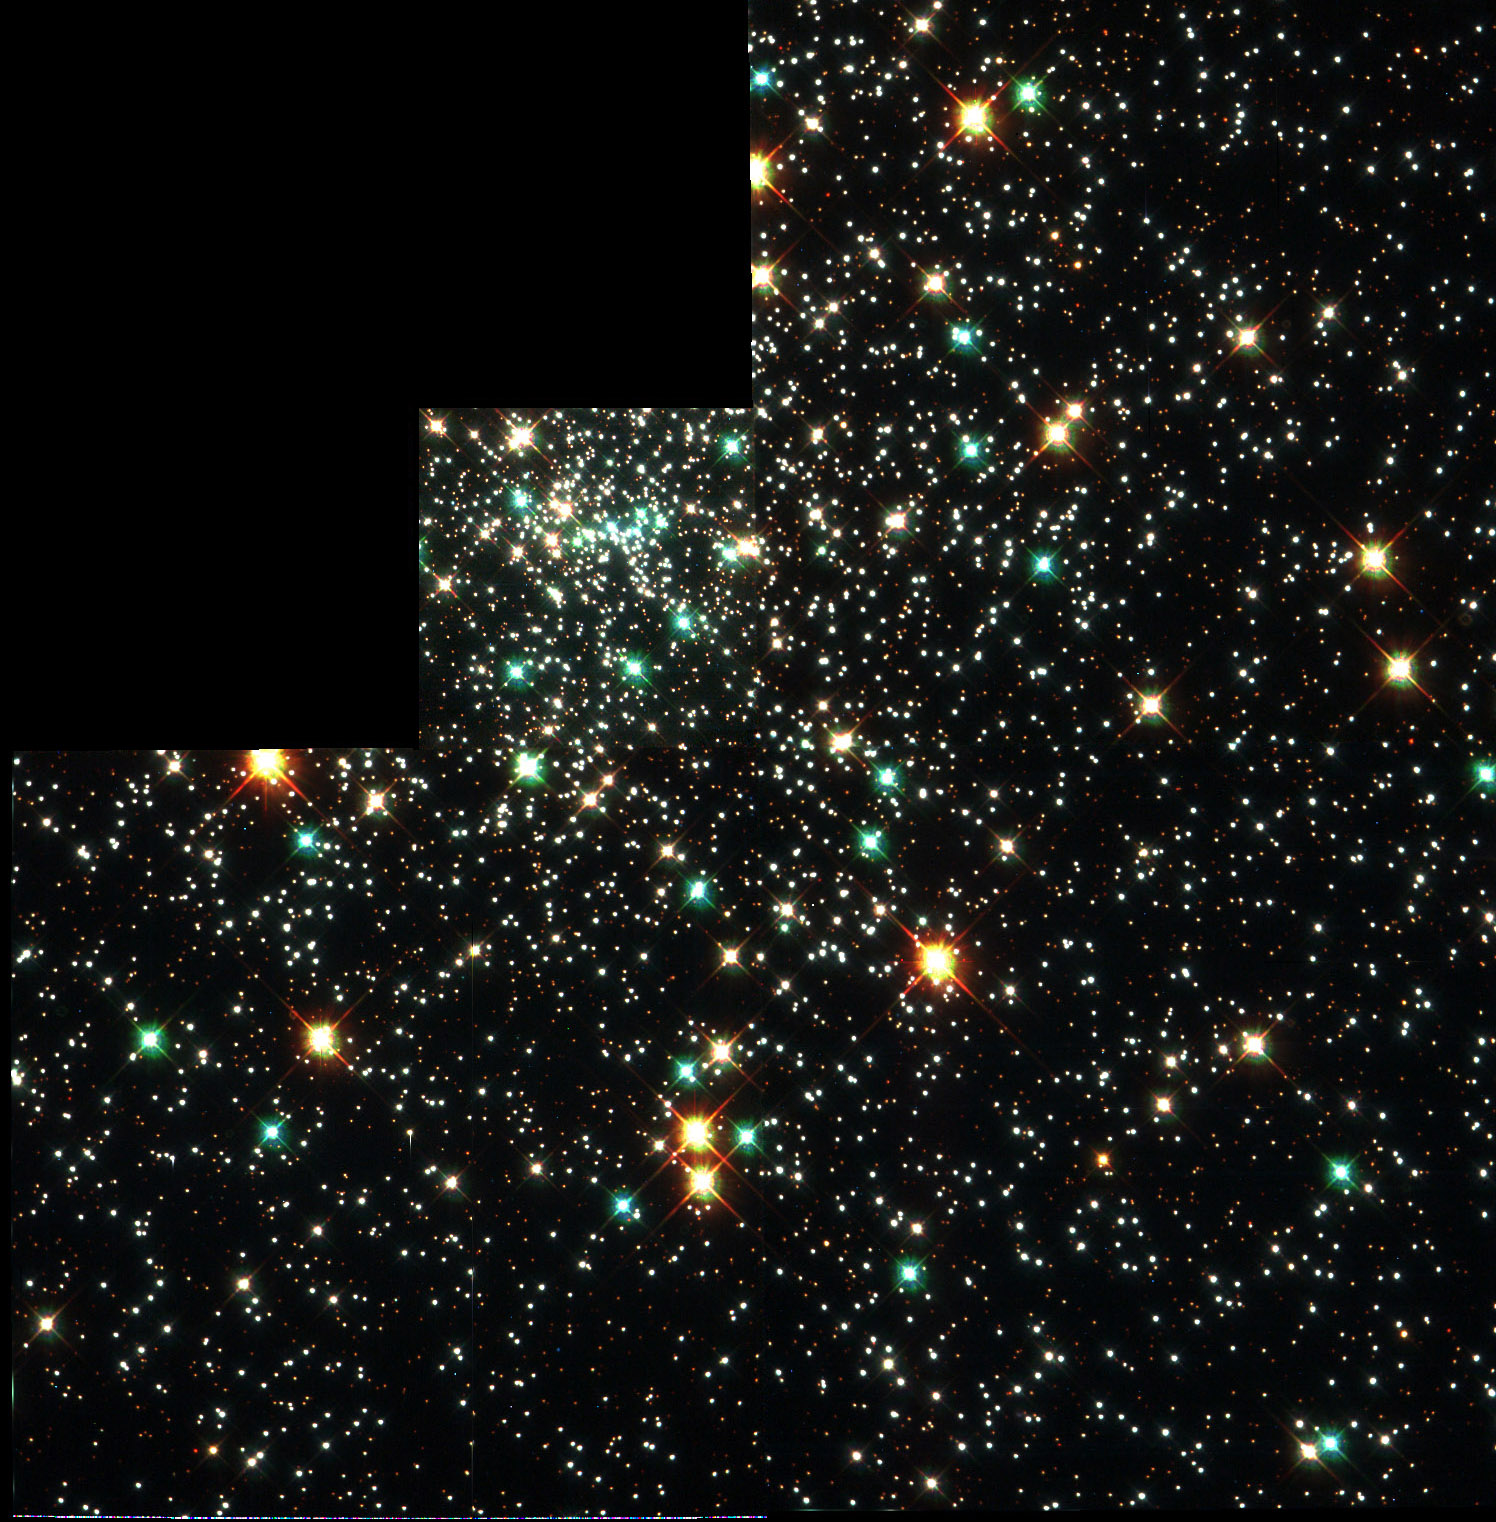    NGC 6397